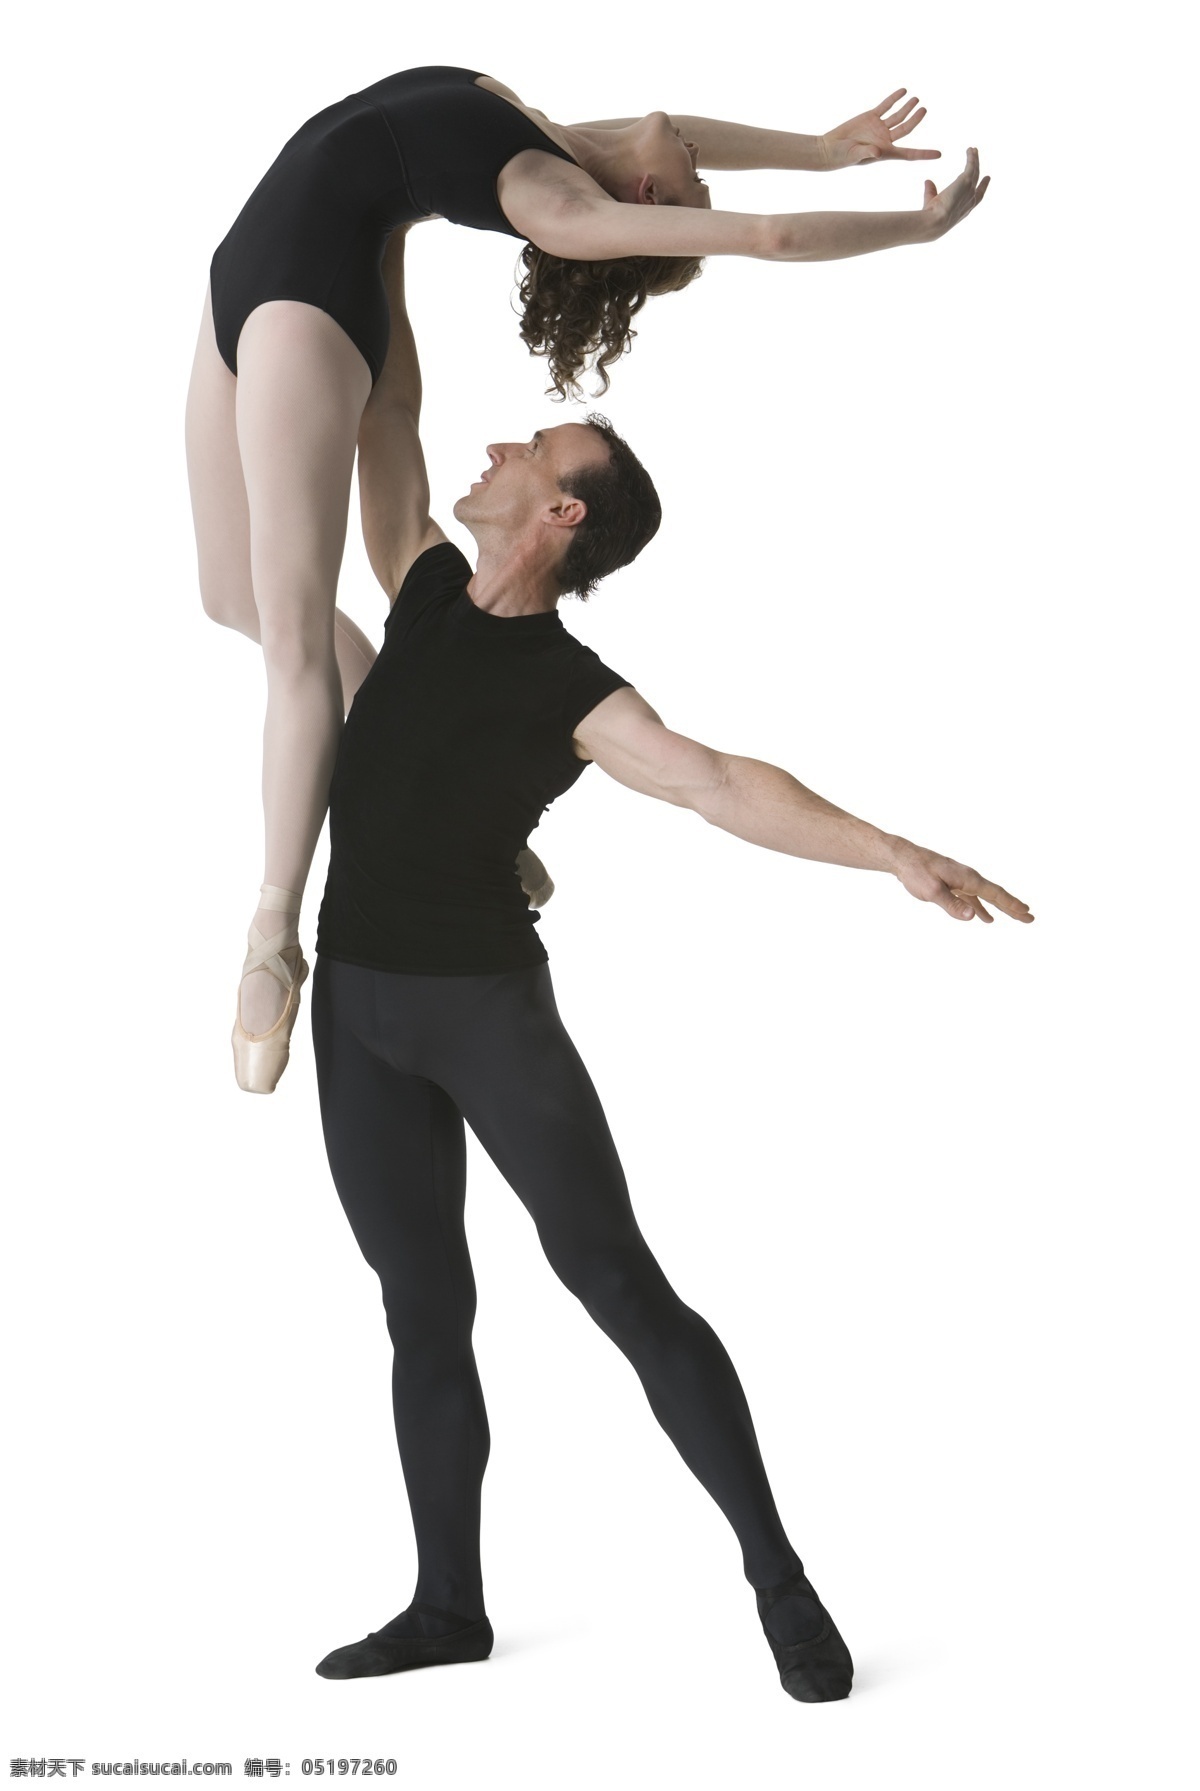 芭蕾 舞蹈图片 芭蕾舞蹈 美腿 文化艺术 舞蹈 舞蹈音乐 脚尖 双人 psd源文件